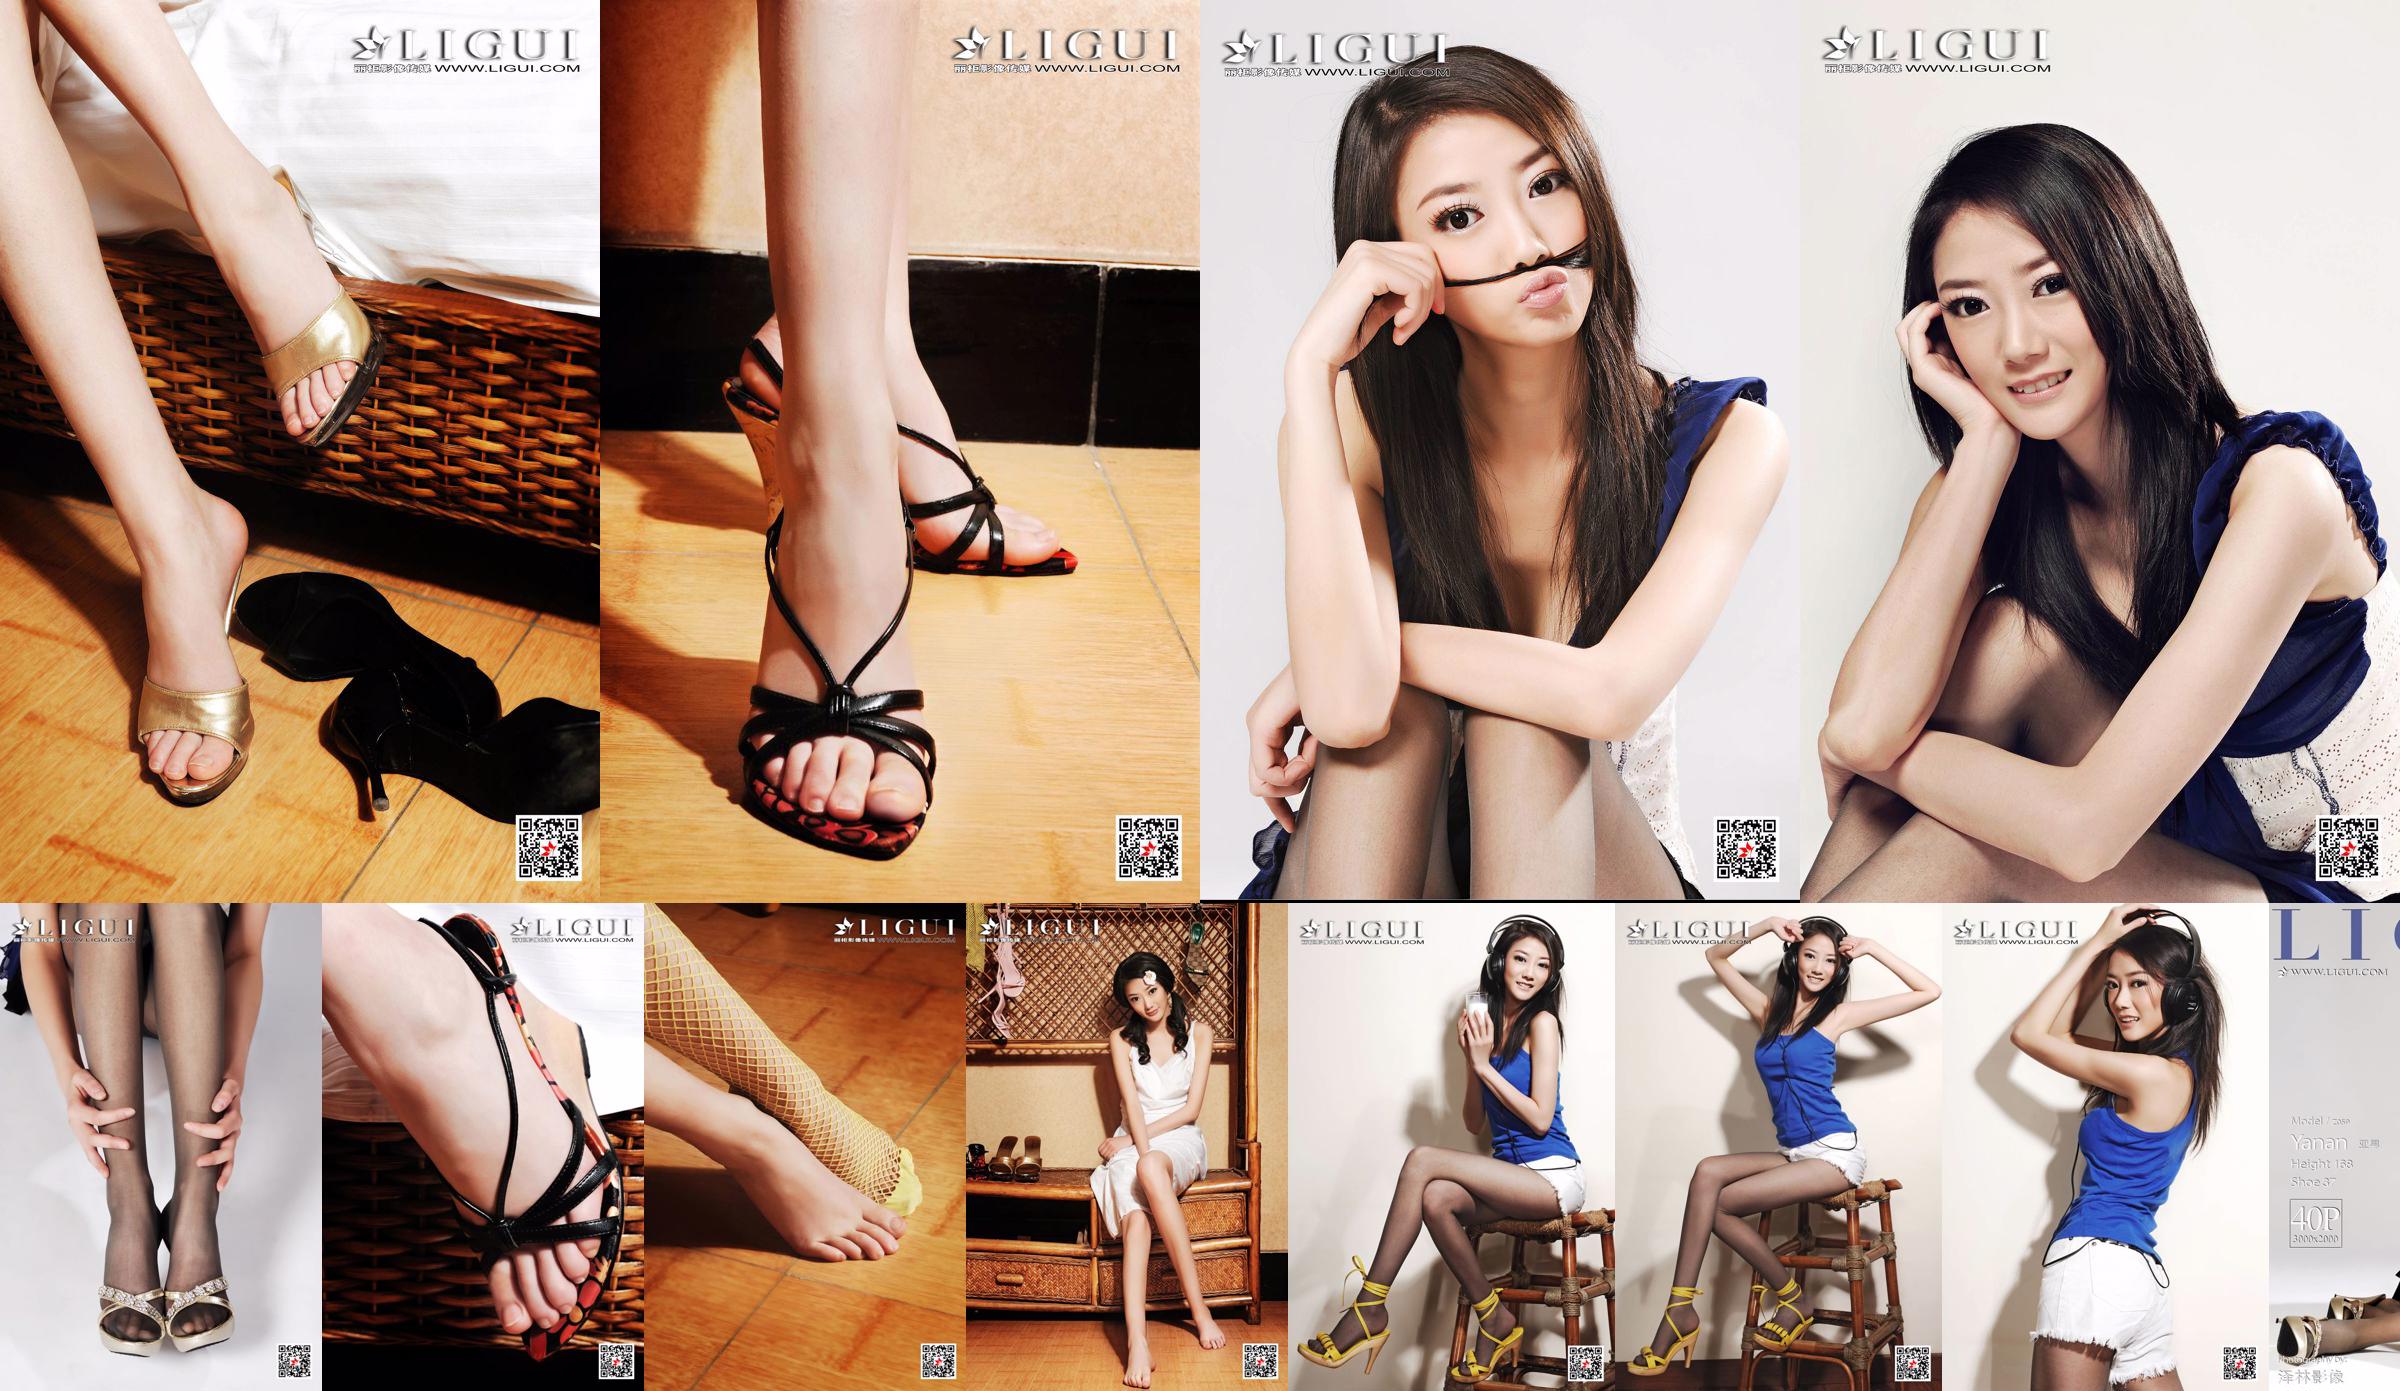 Азиатский мальчик-модель "Девушка с длинными ногами и темпераментом" [Лигуй Лигуй] No.154397 Страница 1